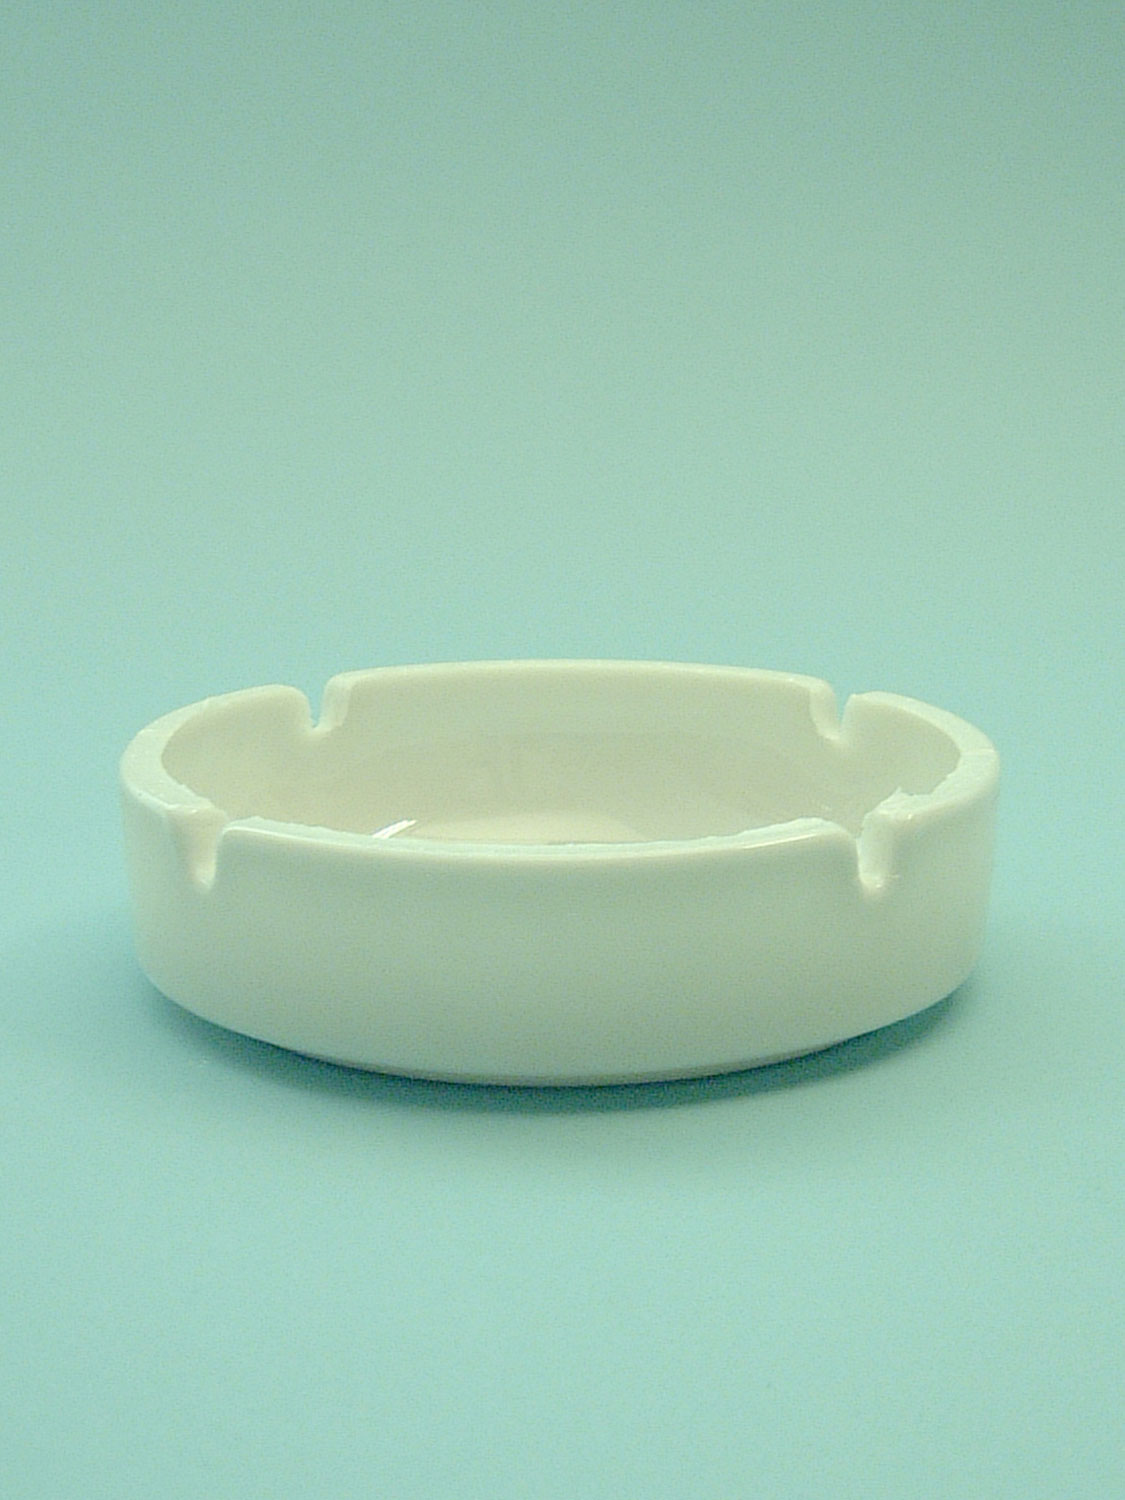 Sugar glass ashtray, White 4 x ø 14 cm.